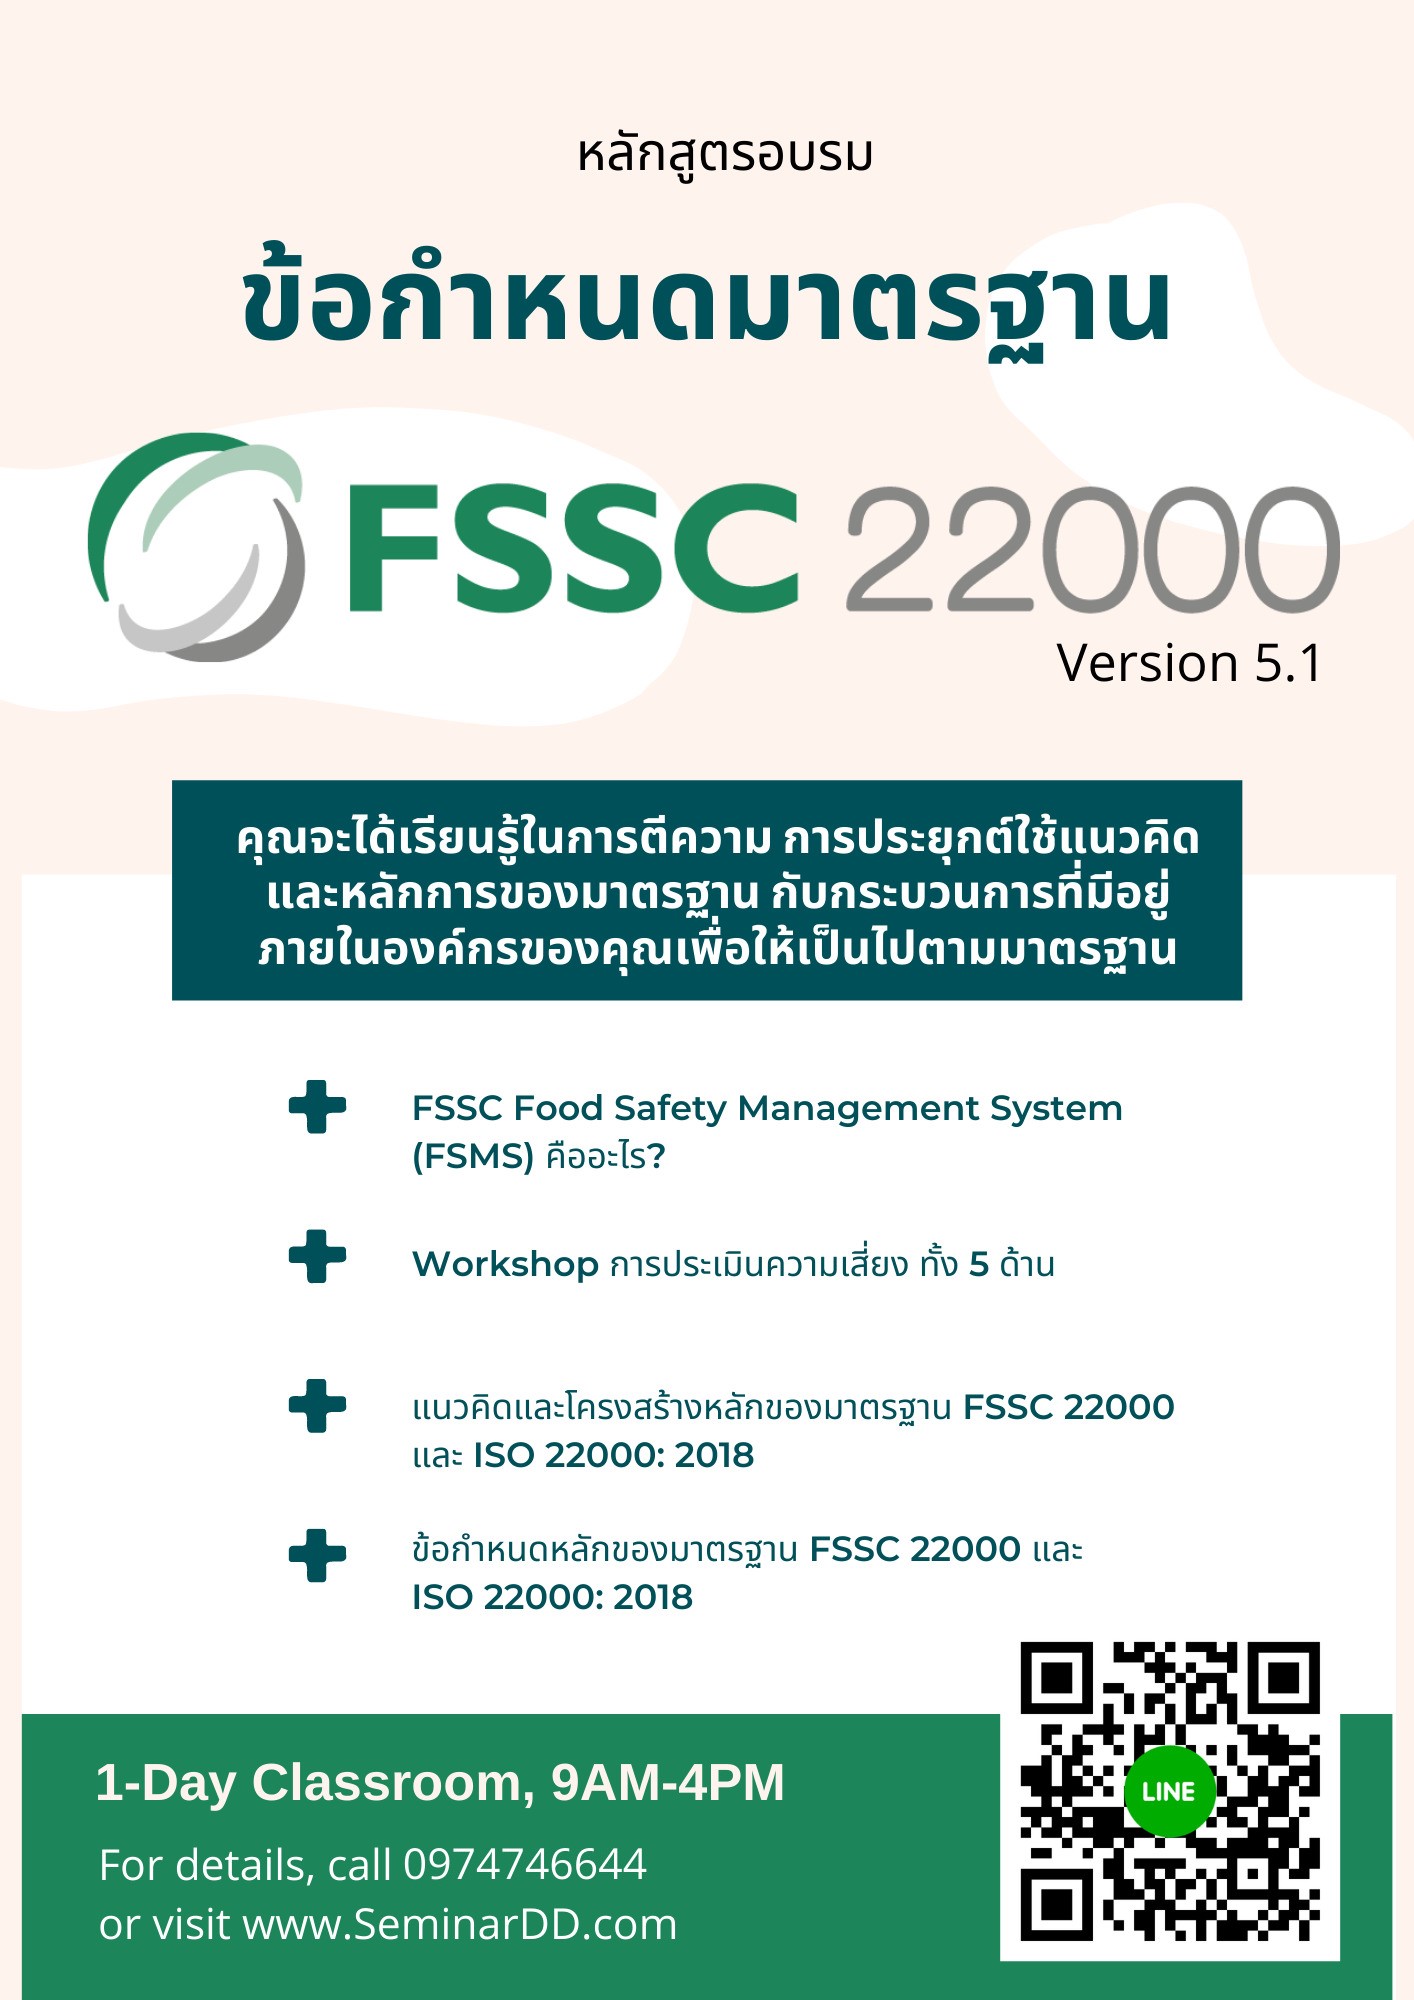 หลักสูตร อบรม ข้อกำหนดมาตรฐาน FSSC22000 Version 6.0 (Requirements)